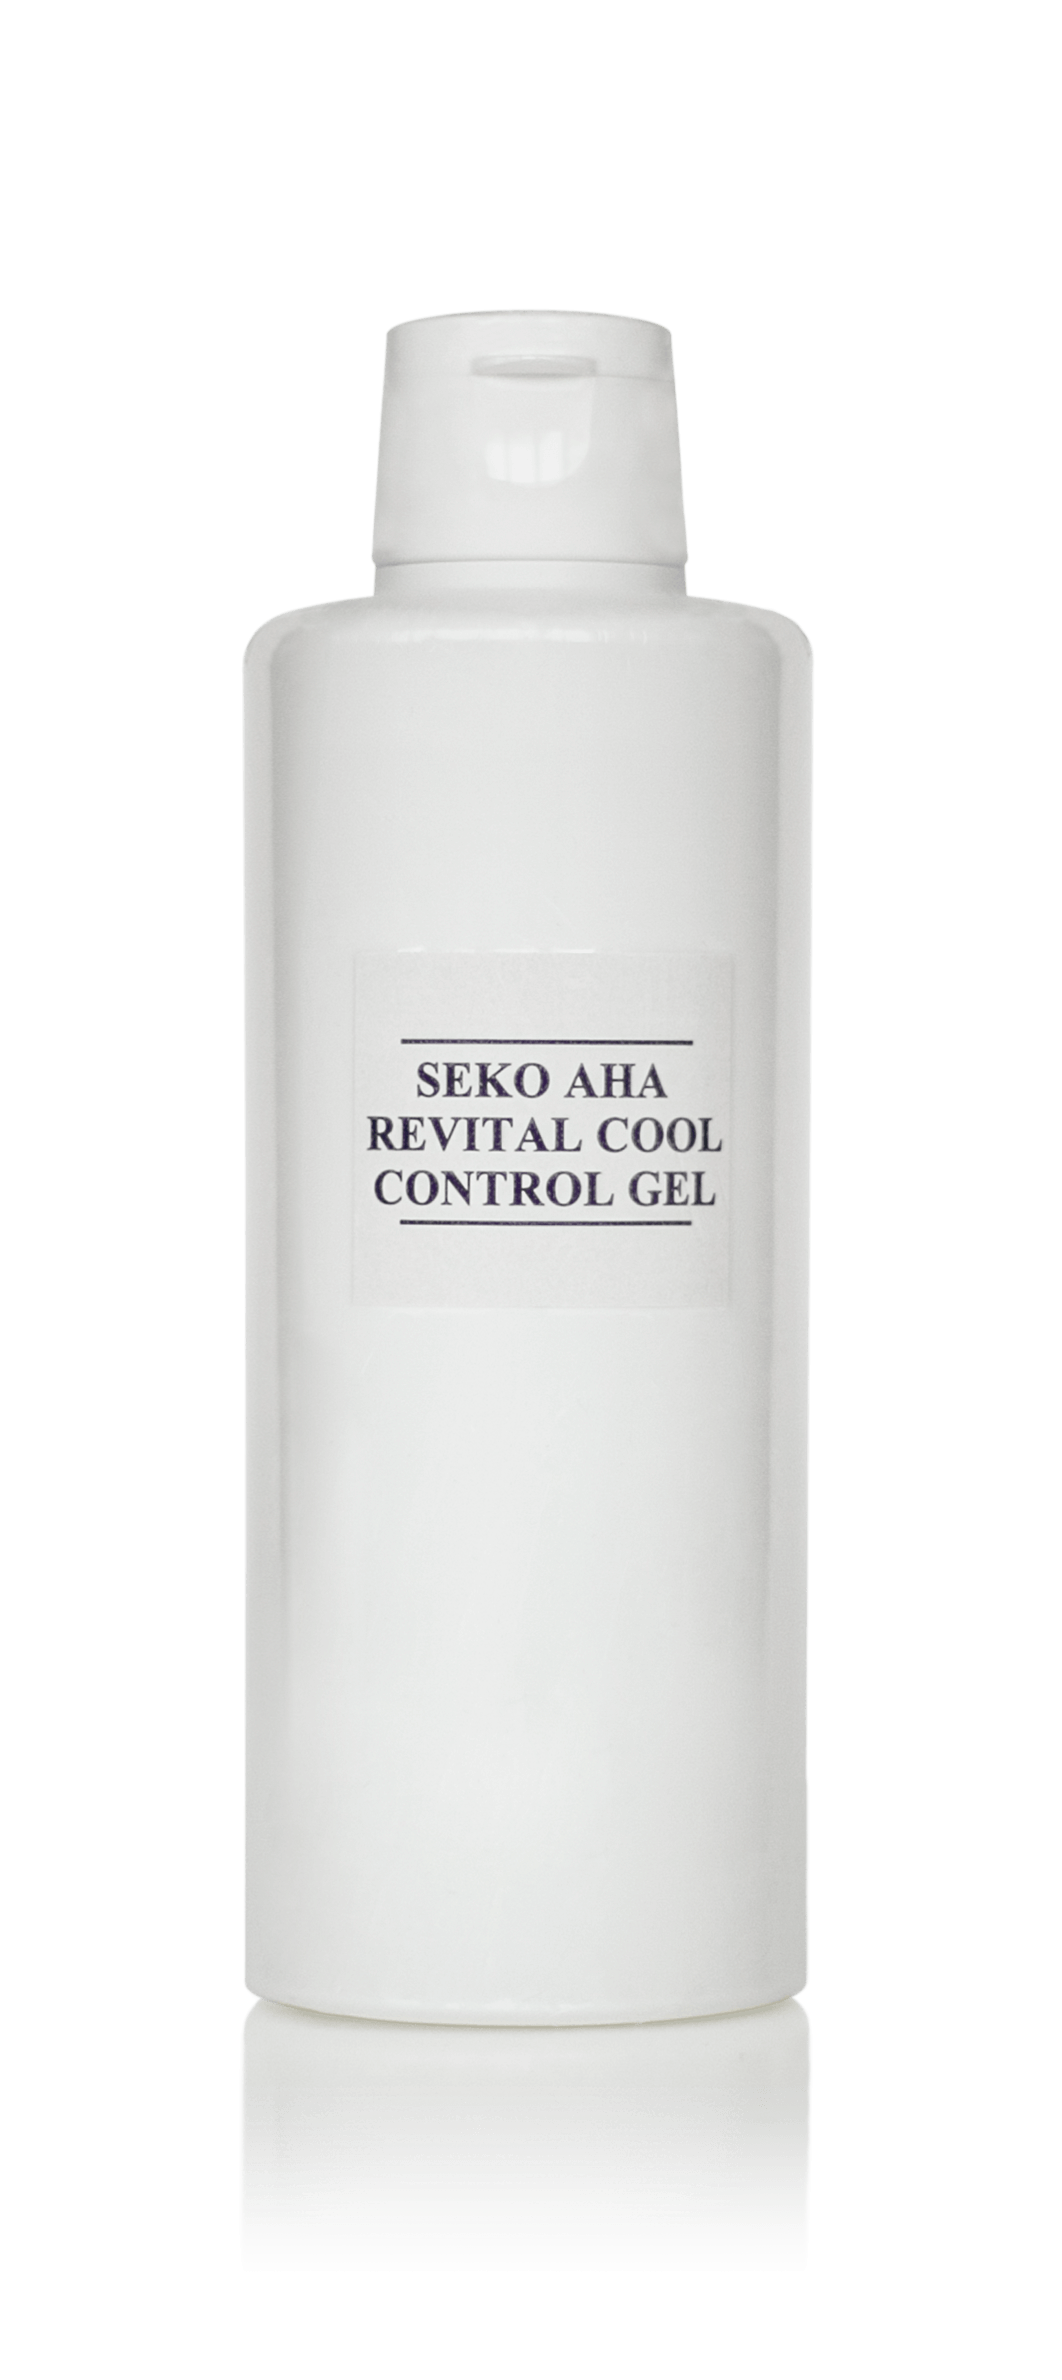 Seko Aha Revital Cool Control Gel